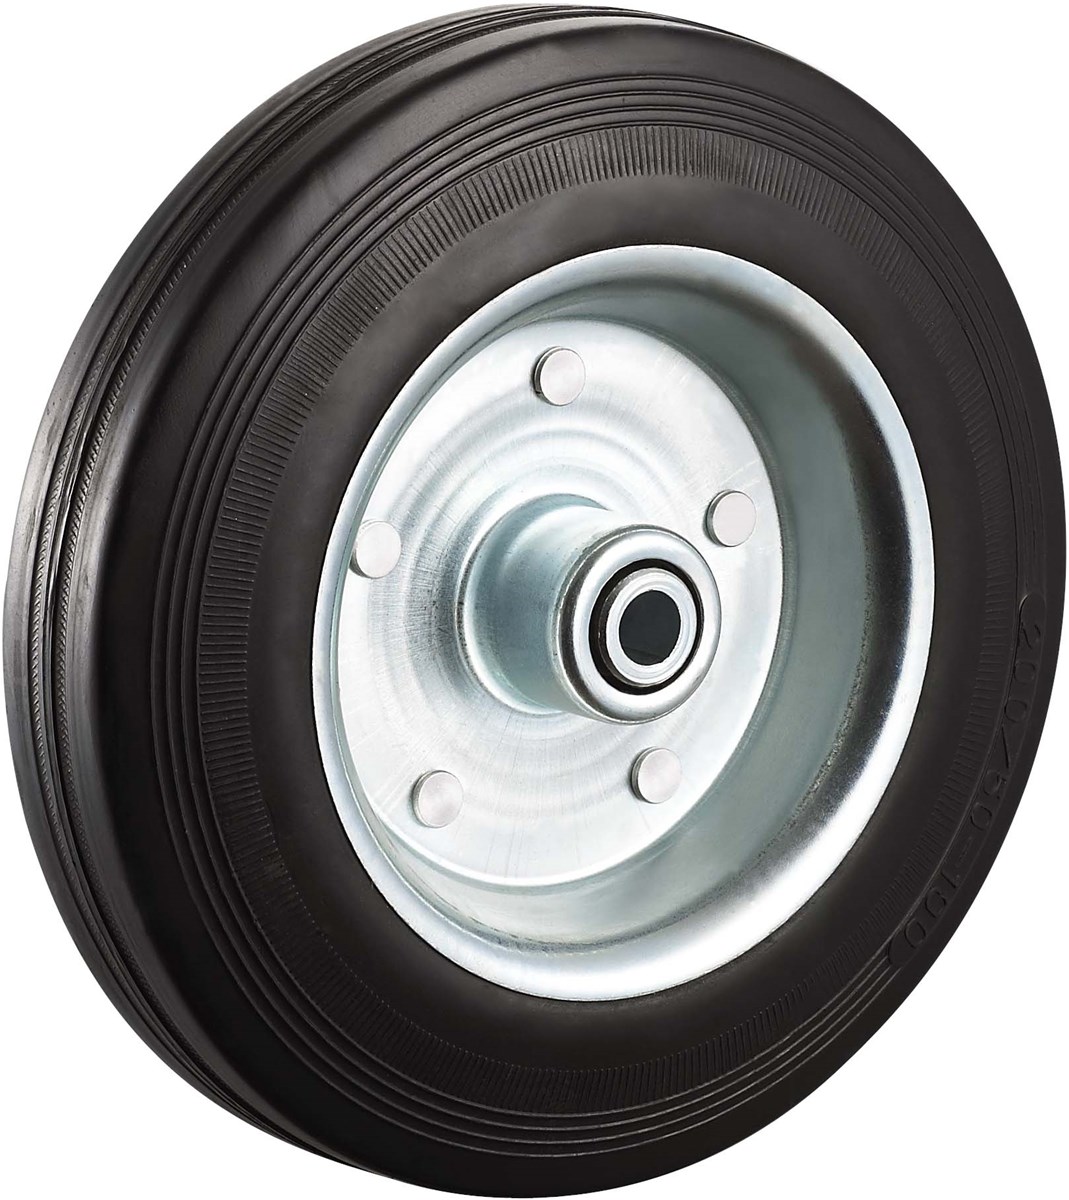 Industrial caster wheel rubber 5 inch truck wheels